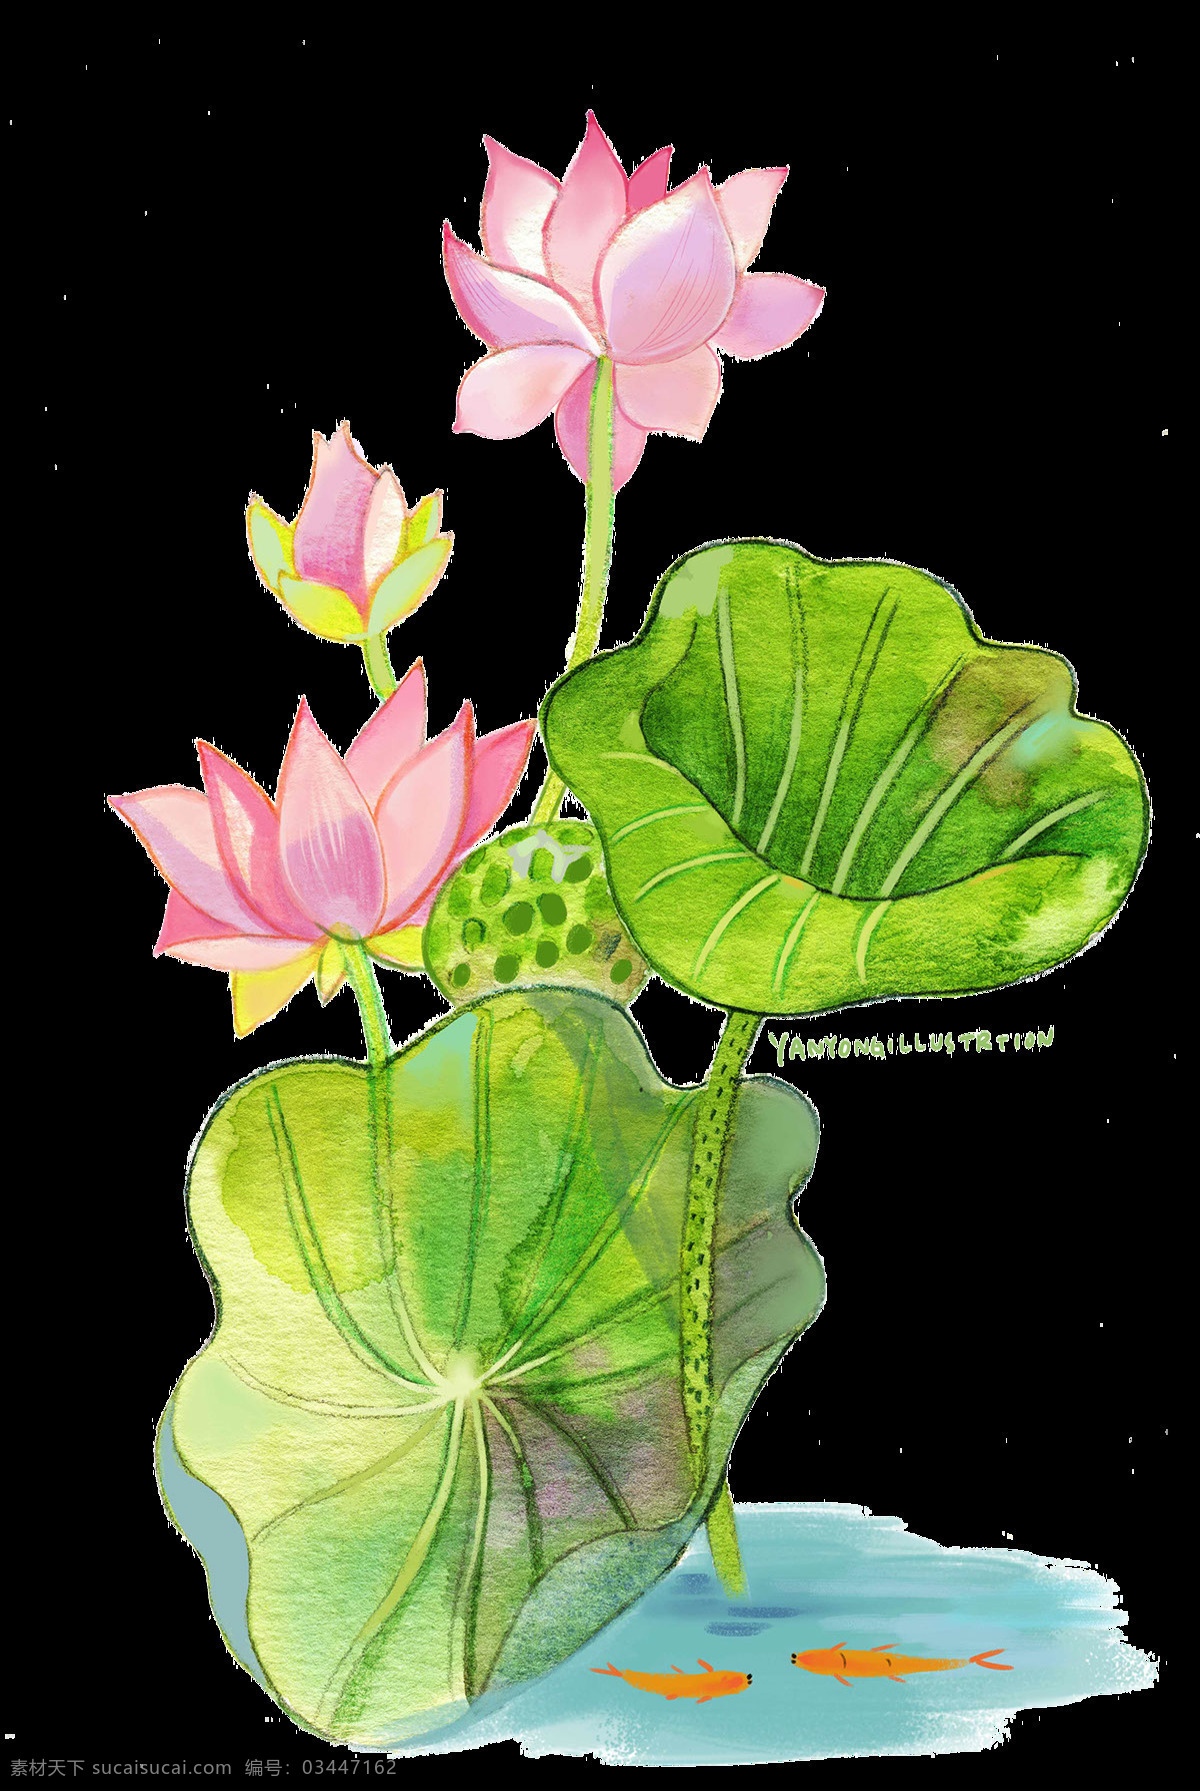 中国 风 荷叶 荷花 绘画 中国风 传统 水墨画 创意设计 植物 花朵 荷叶荷叶 水彩 新中式设计 国画 绿叶 夏日 文化艺术 绘画书法